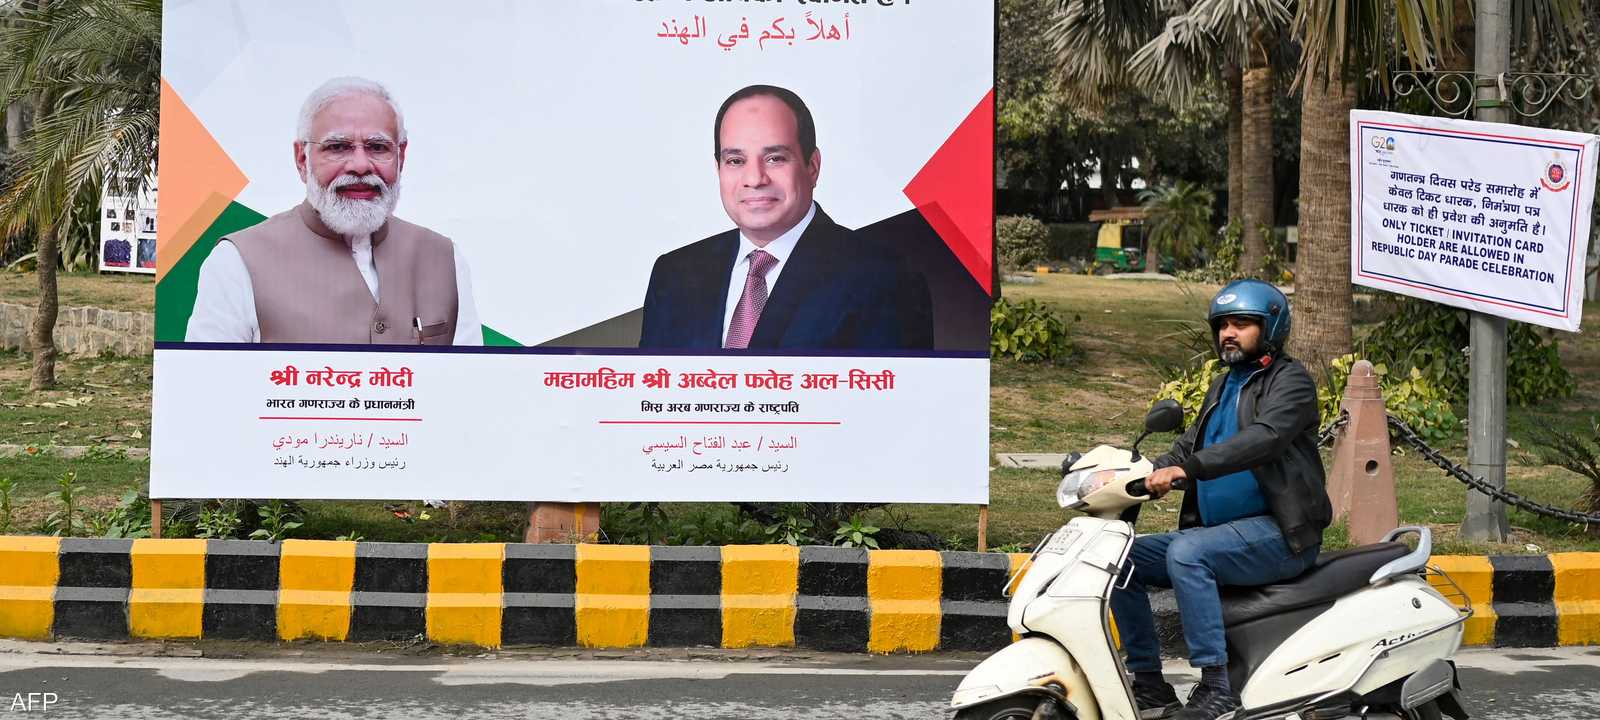 الهند ترحب بزيارة الرئيس المصري عبد الفتاح السيسي